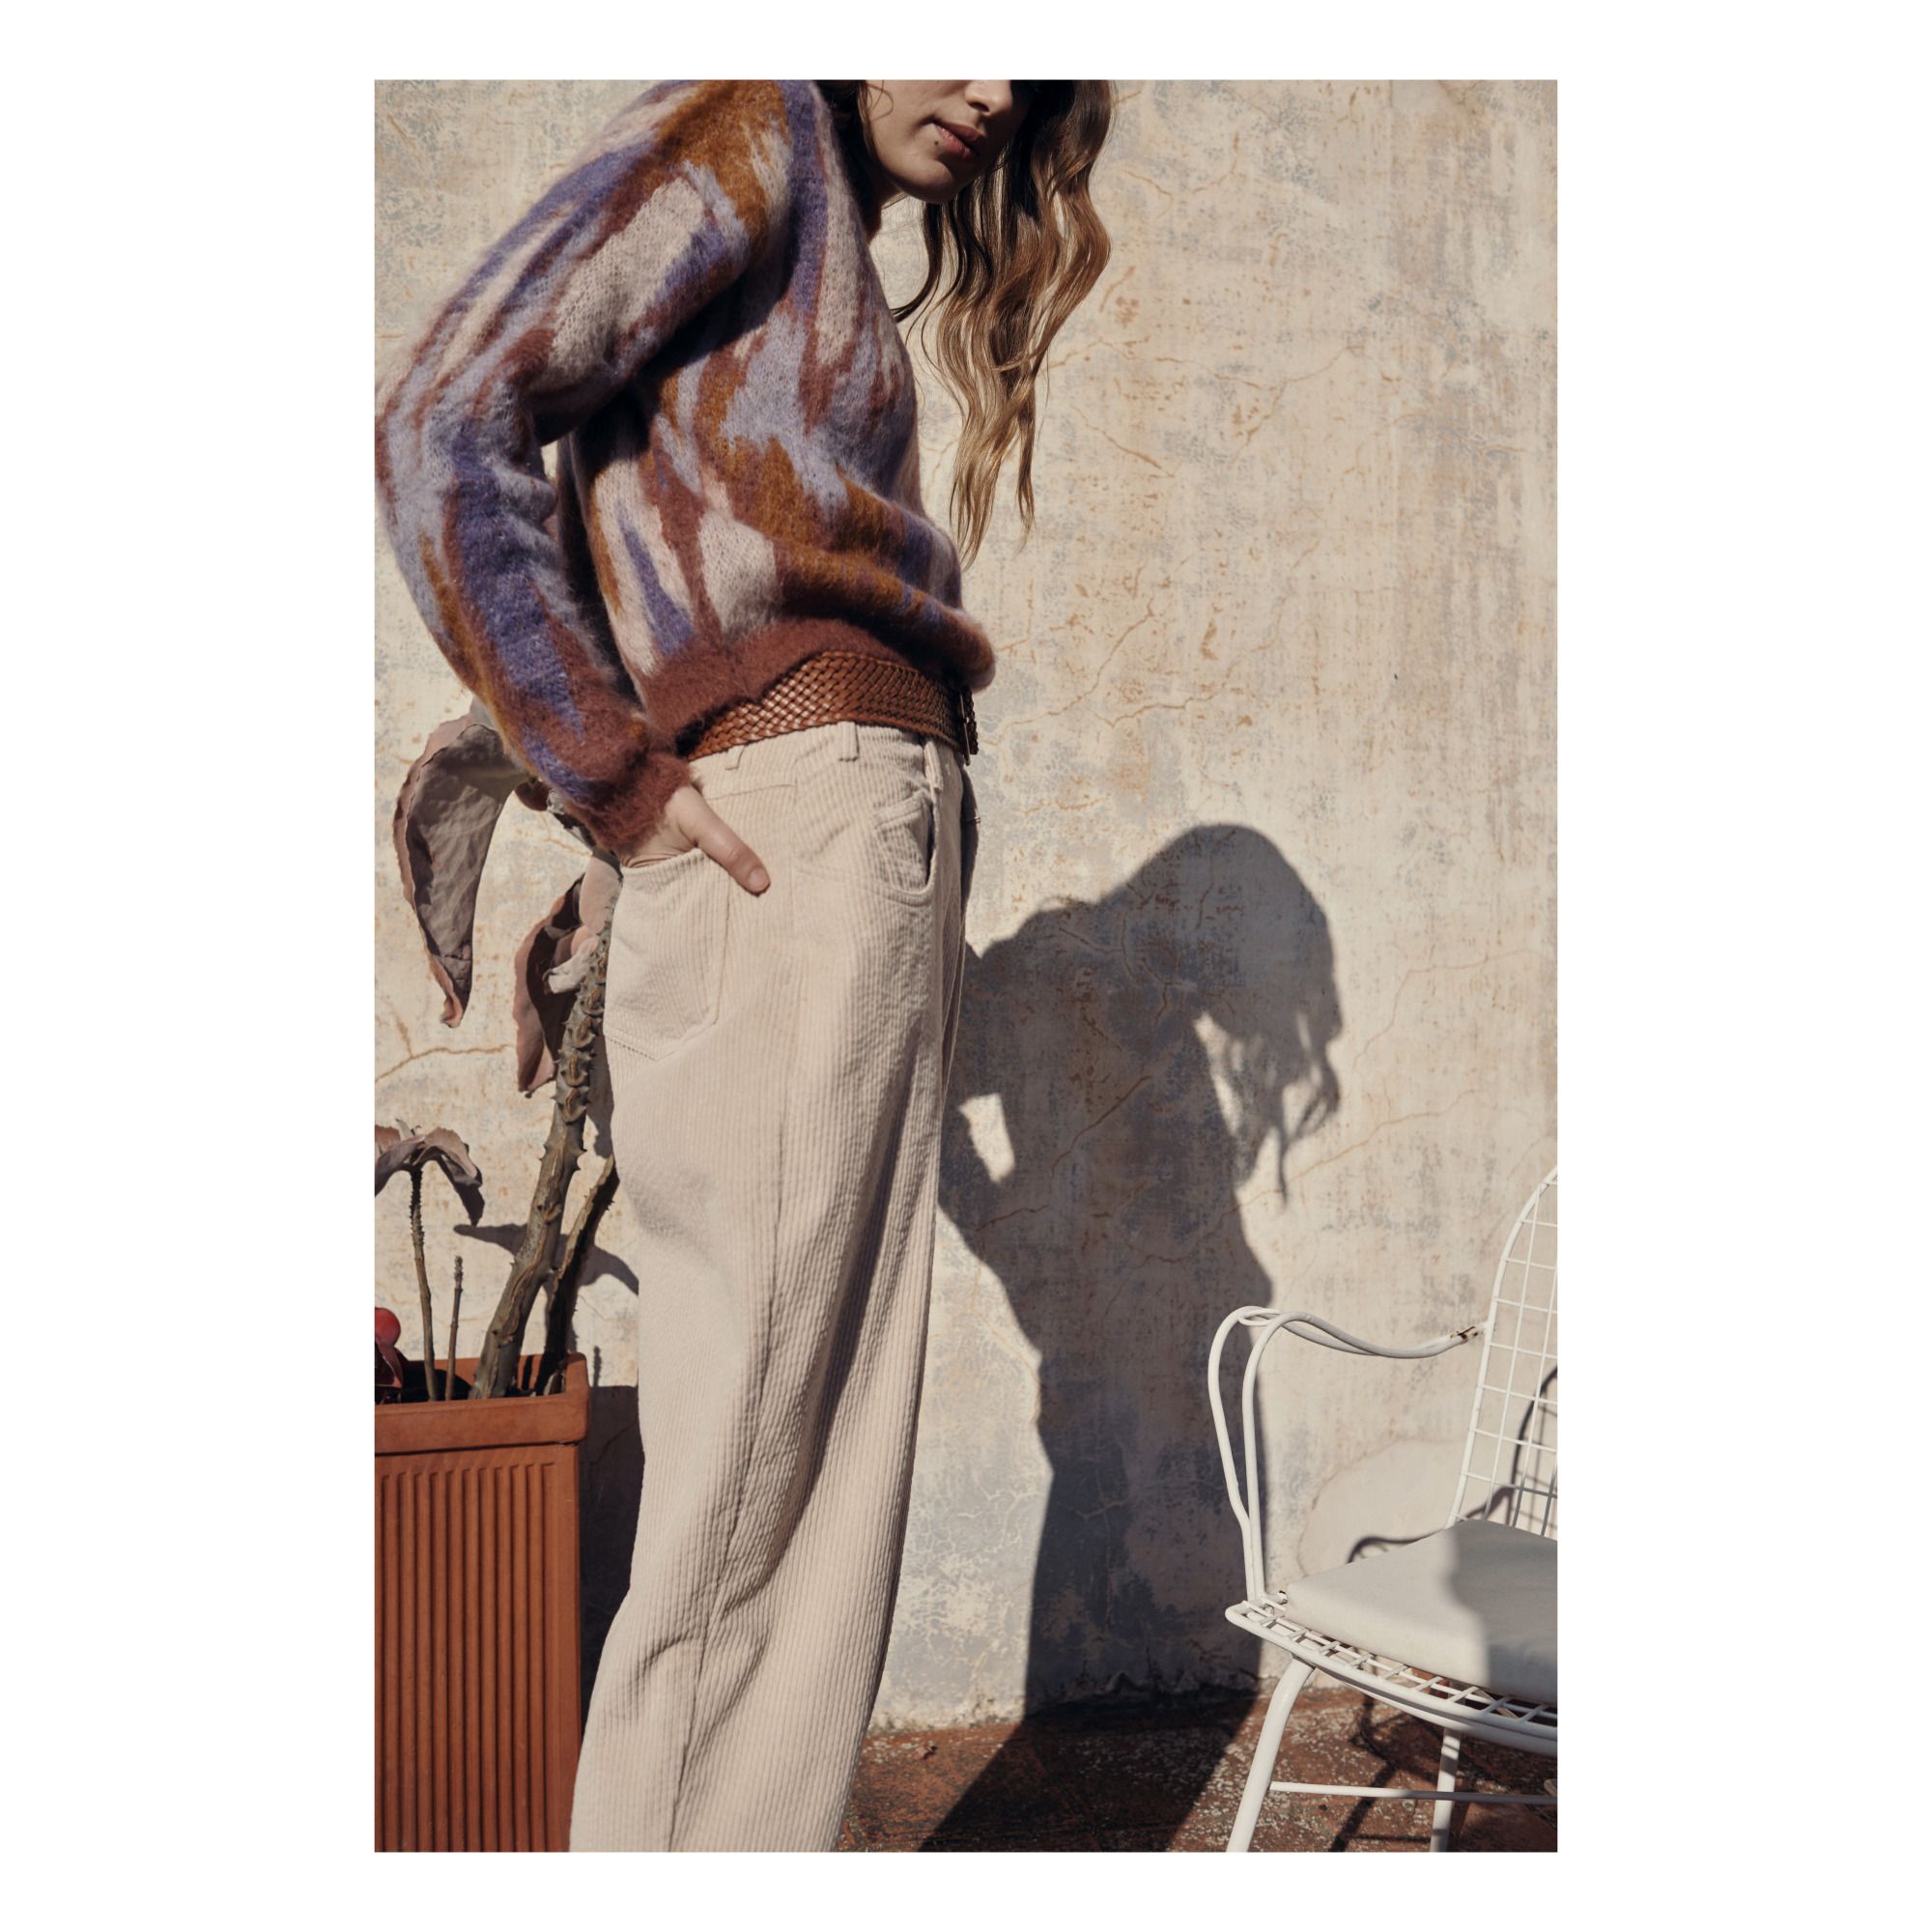 Pantalons Carottes pour Femmes Louis Vuitton, Soldes jusqu'à −16%